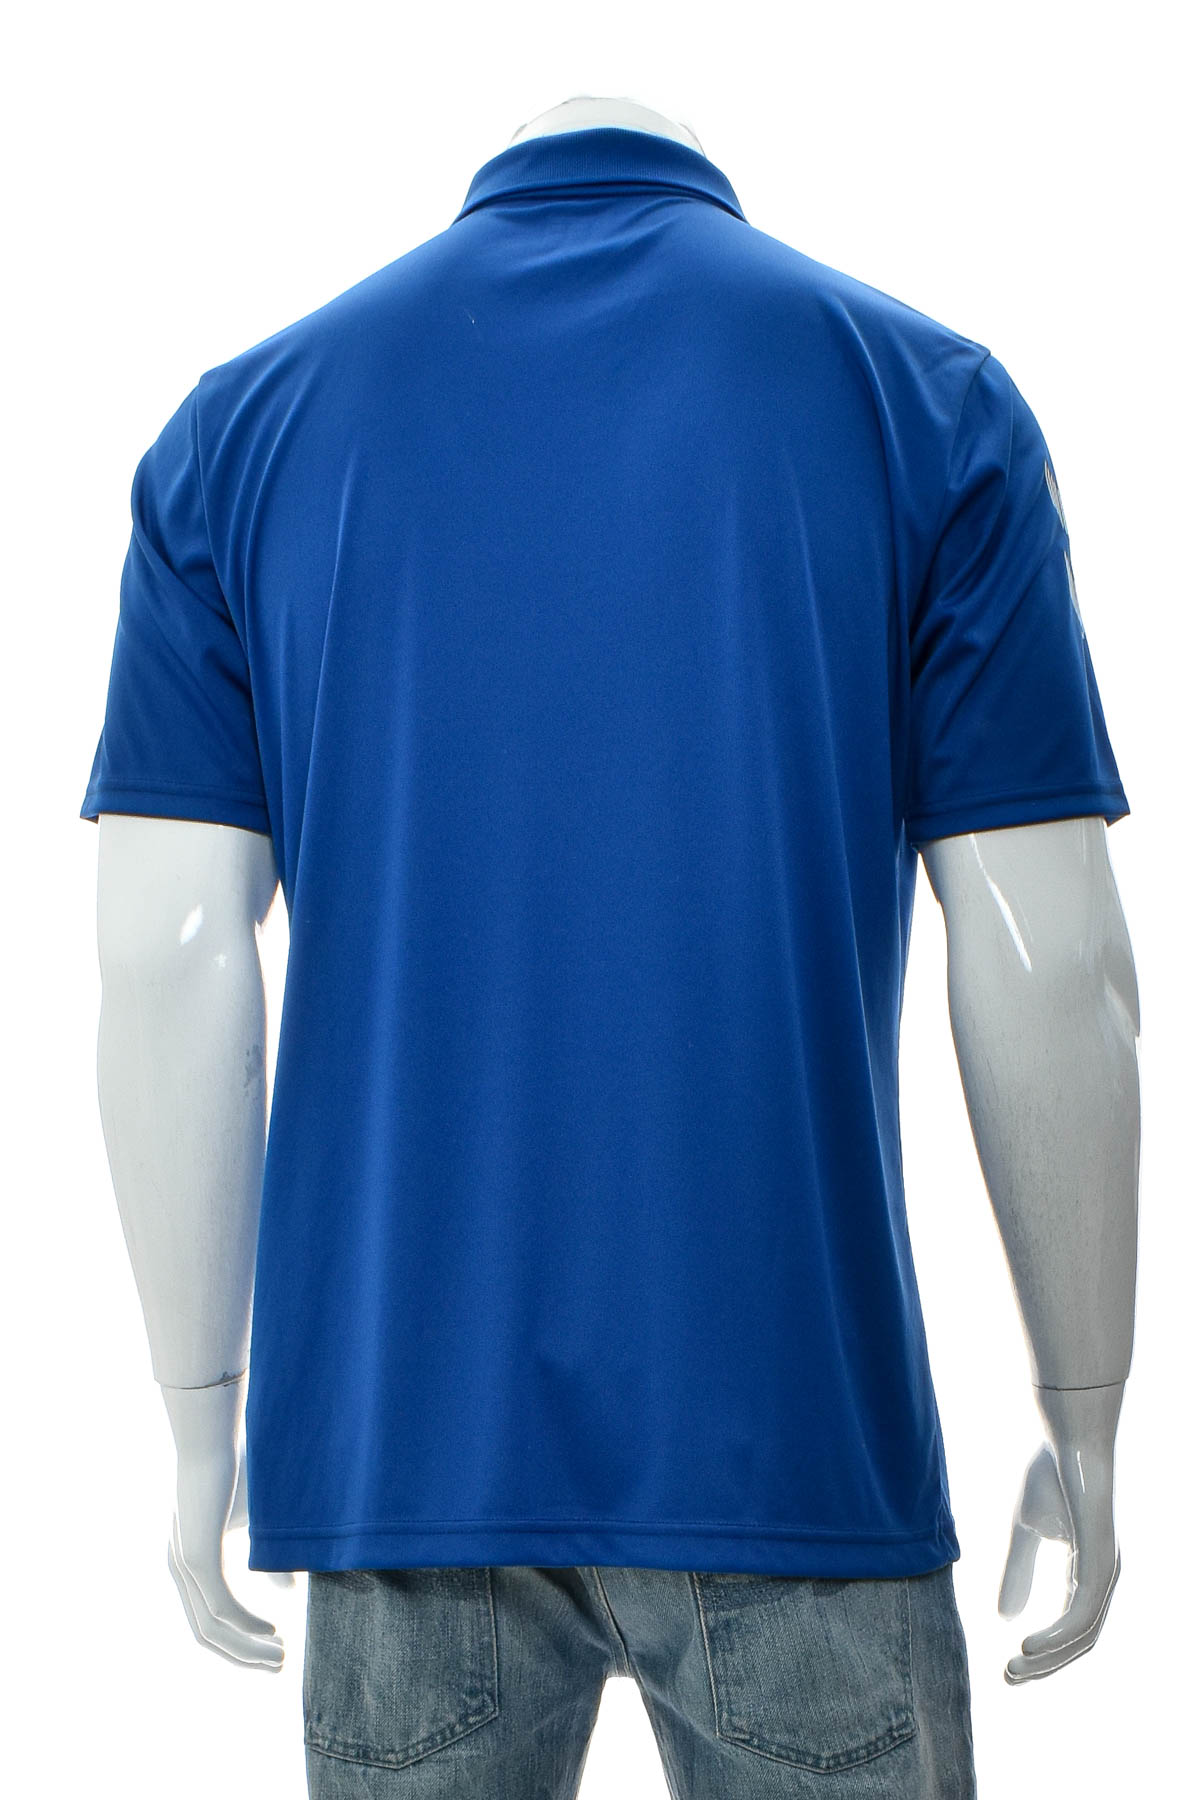 Men's T-shirt - Hummel - 1